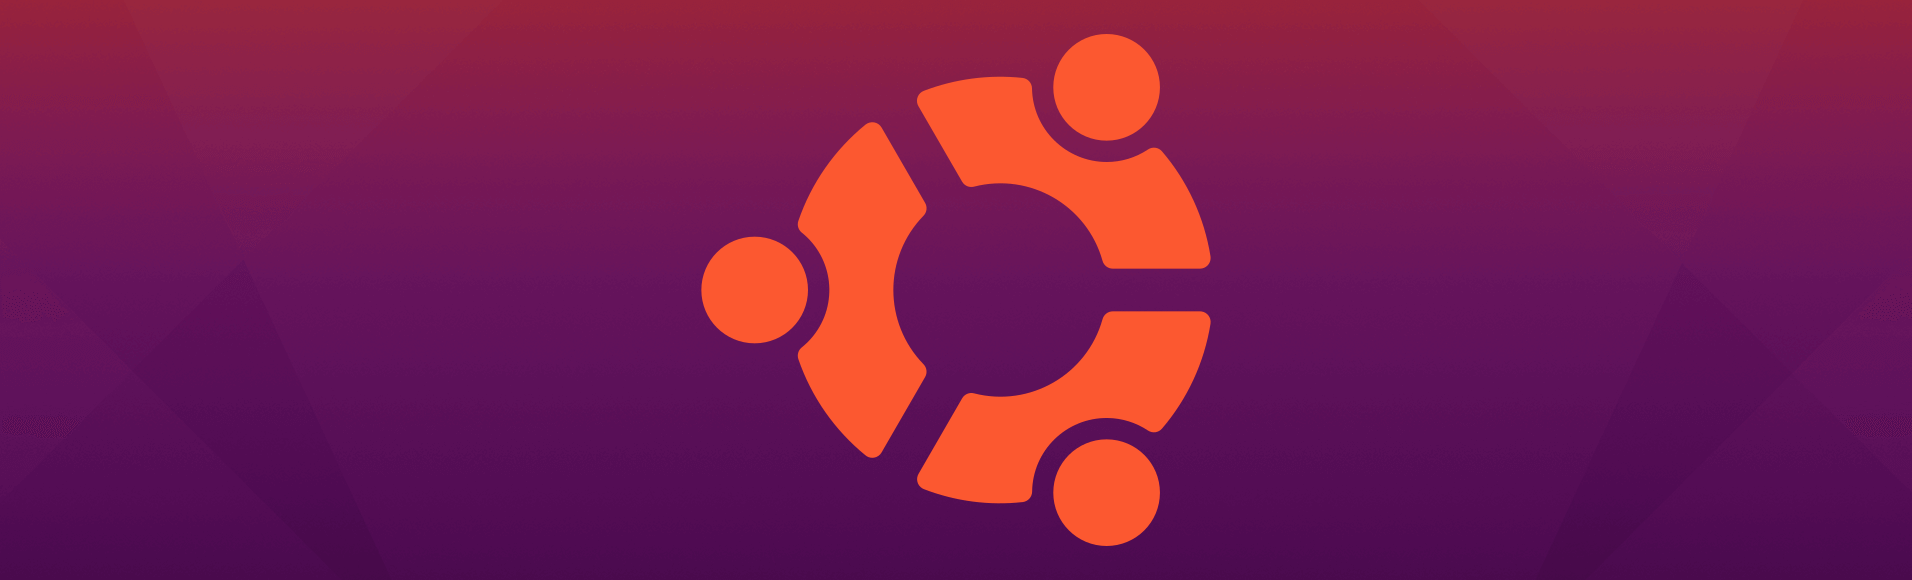 Cara menginstal vfxAlert di Ubuntu